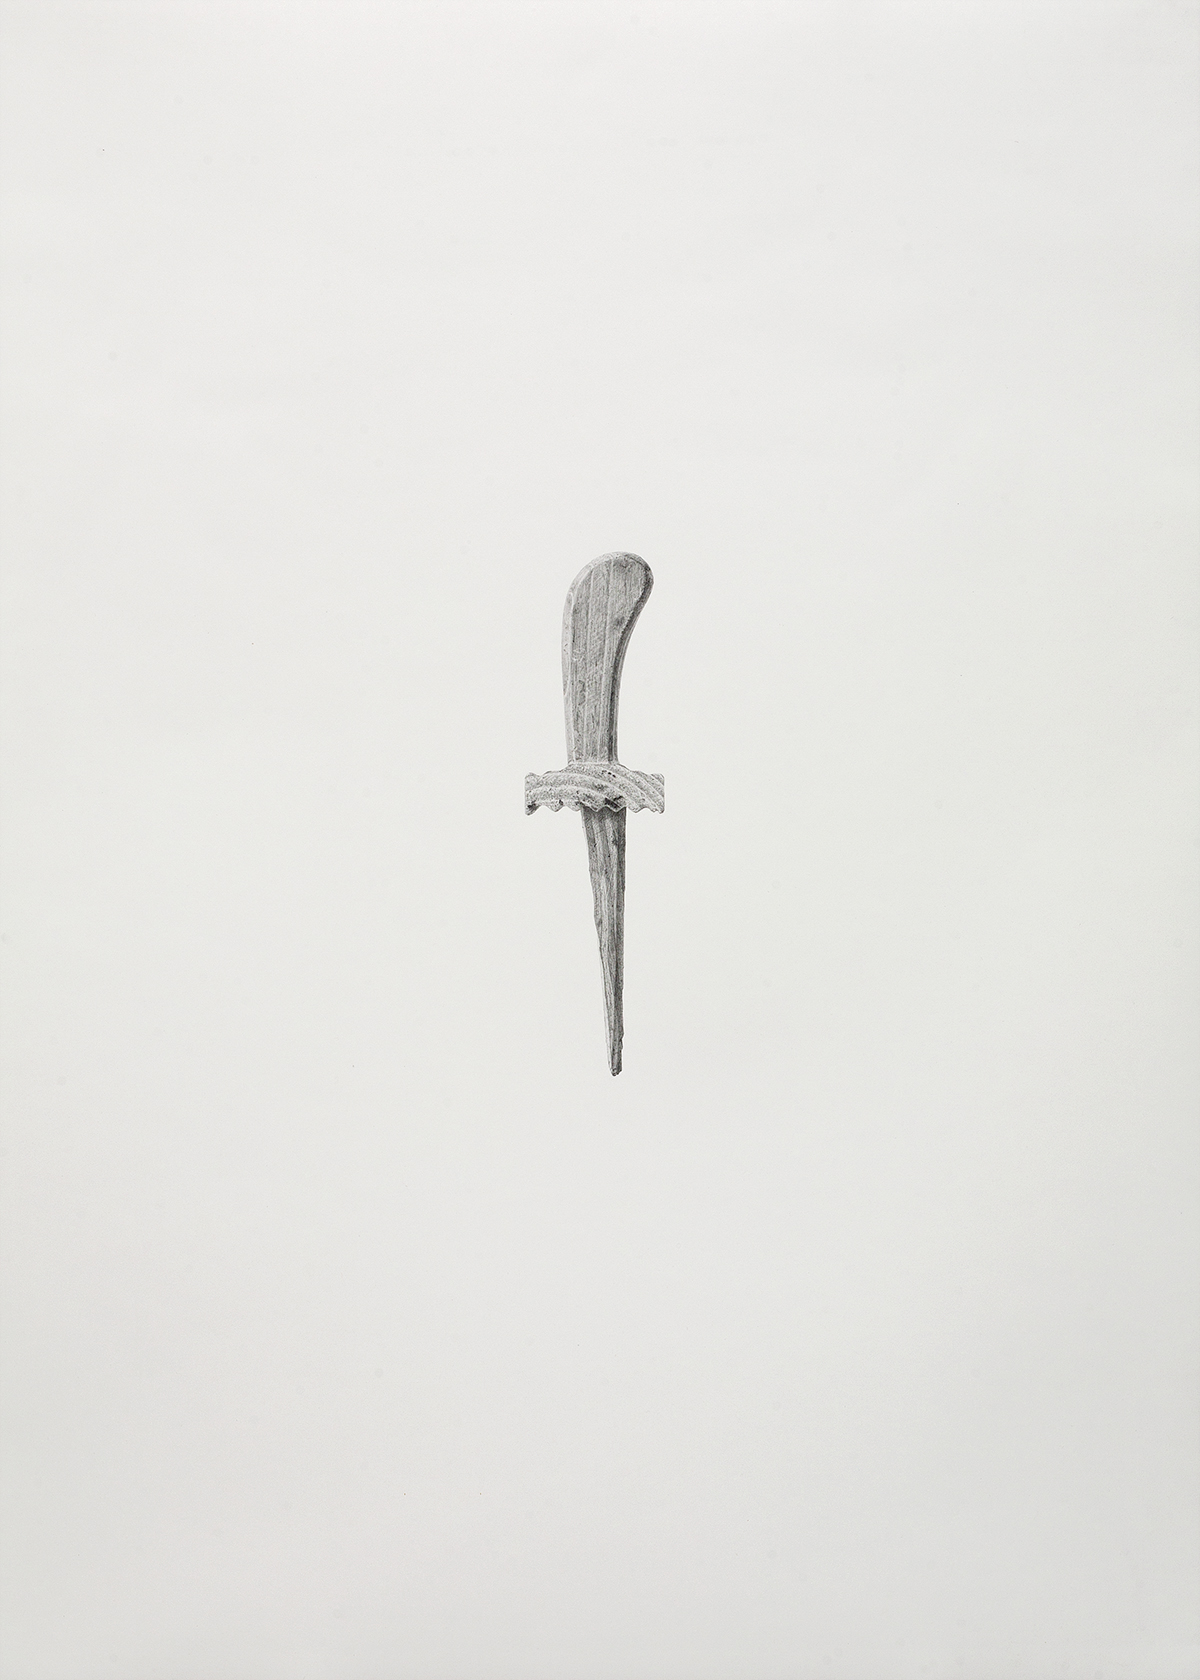 o.T. / Bleistift auf Papier / 61 x 86 cm / 2013